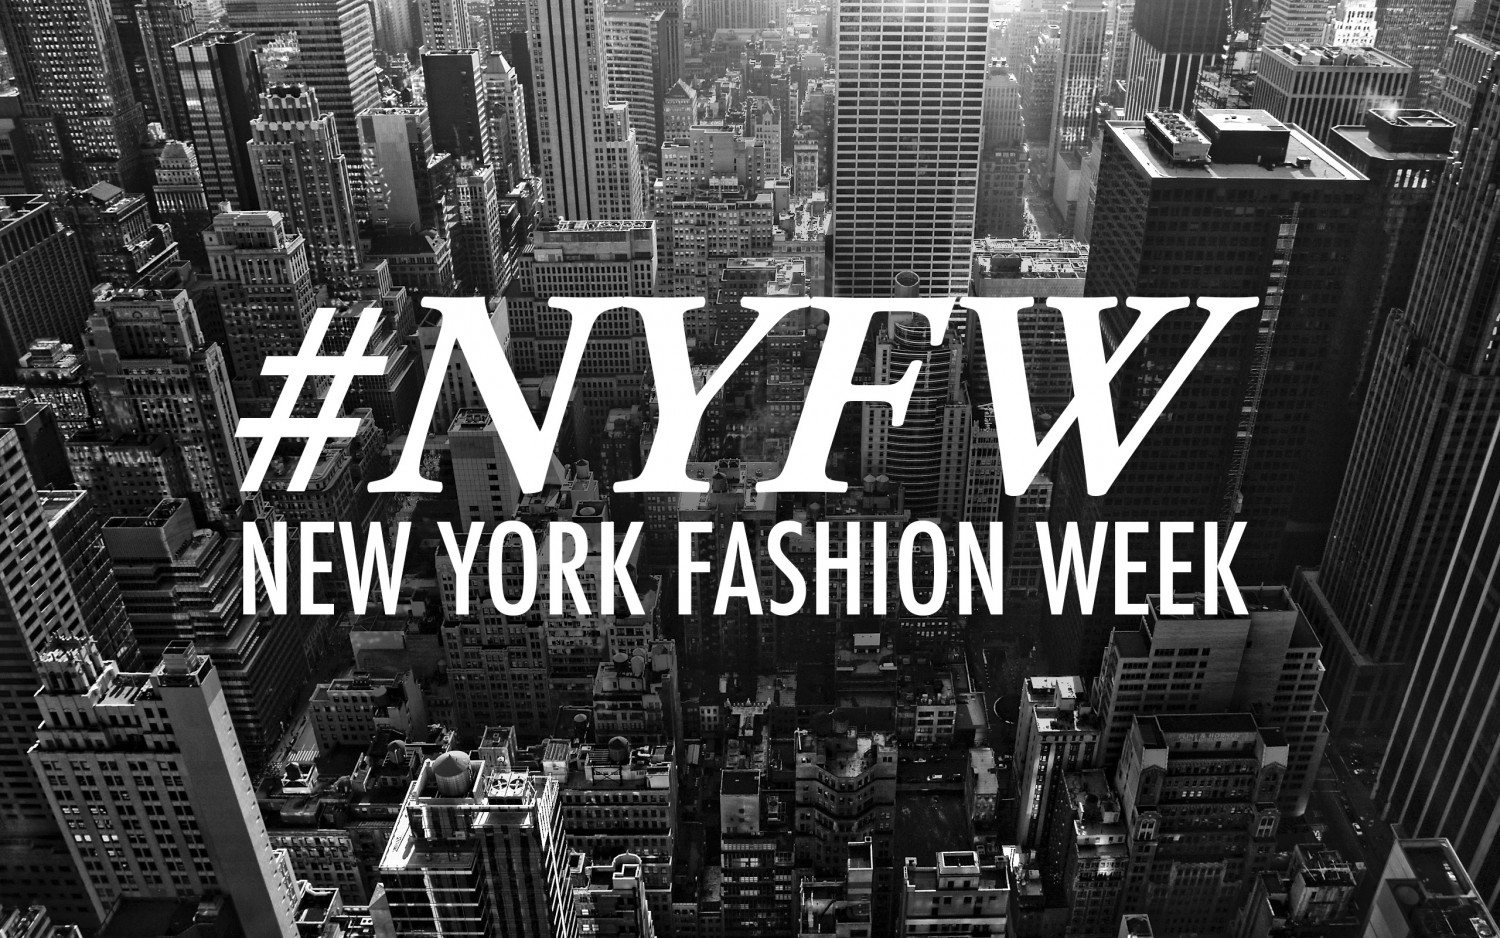 New York Fashion Week Begins In One Week!